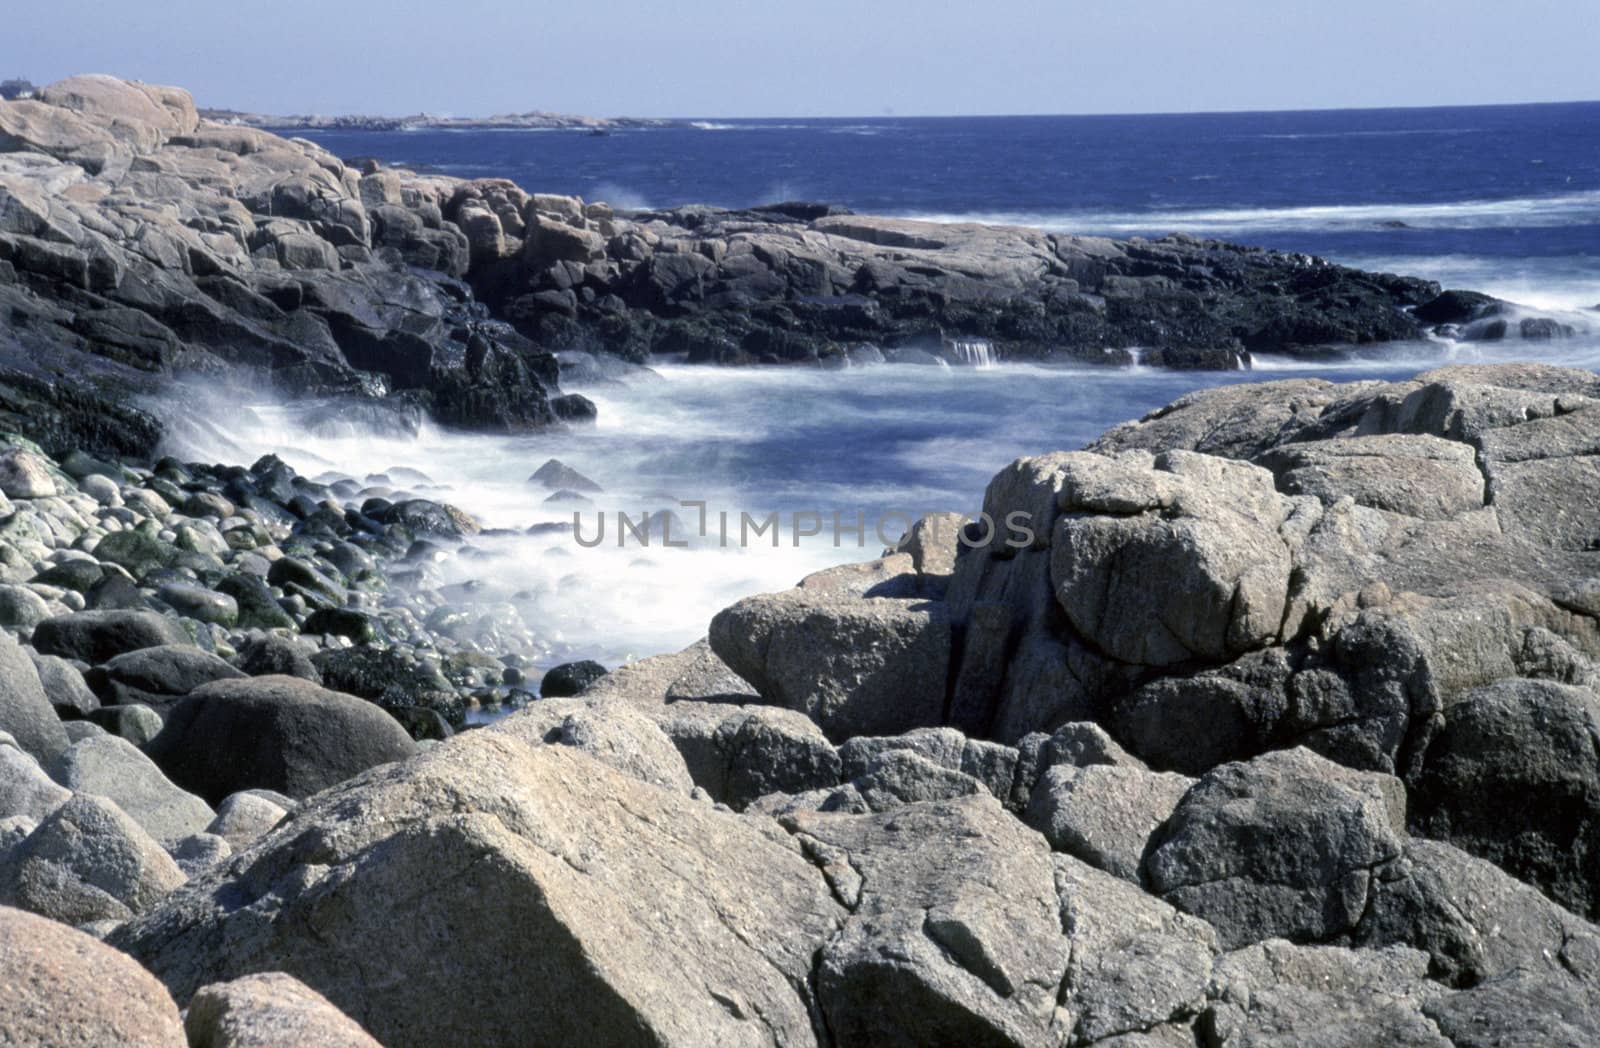 Atlantic Ocean Waves on Rocks by ACMPhoto